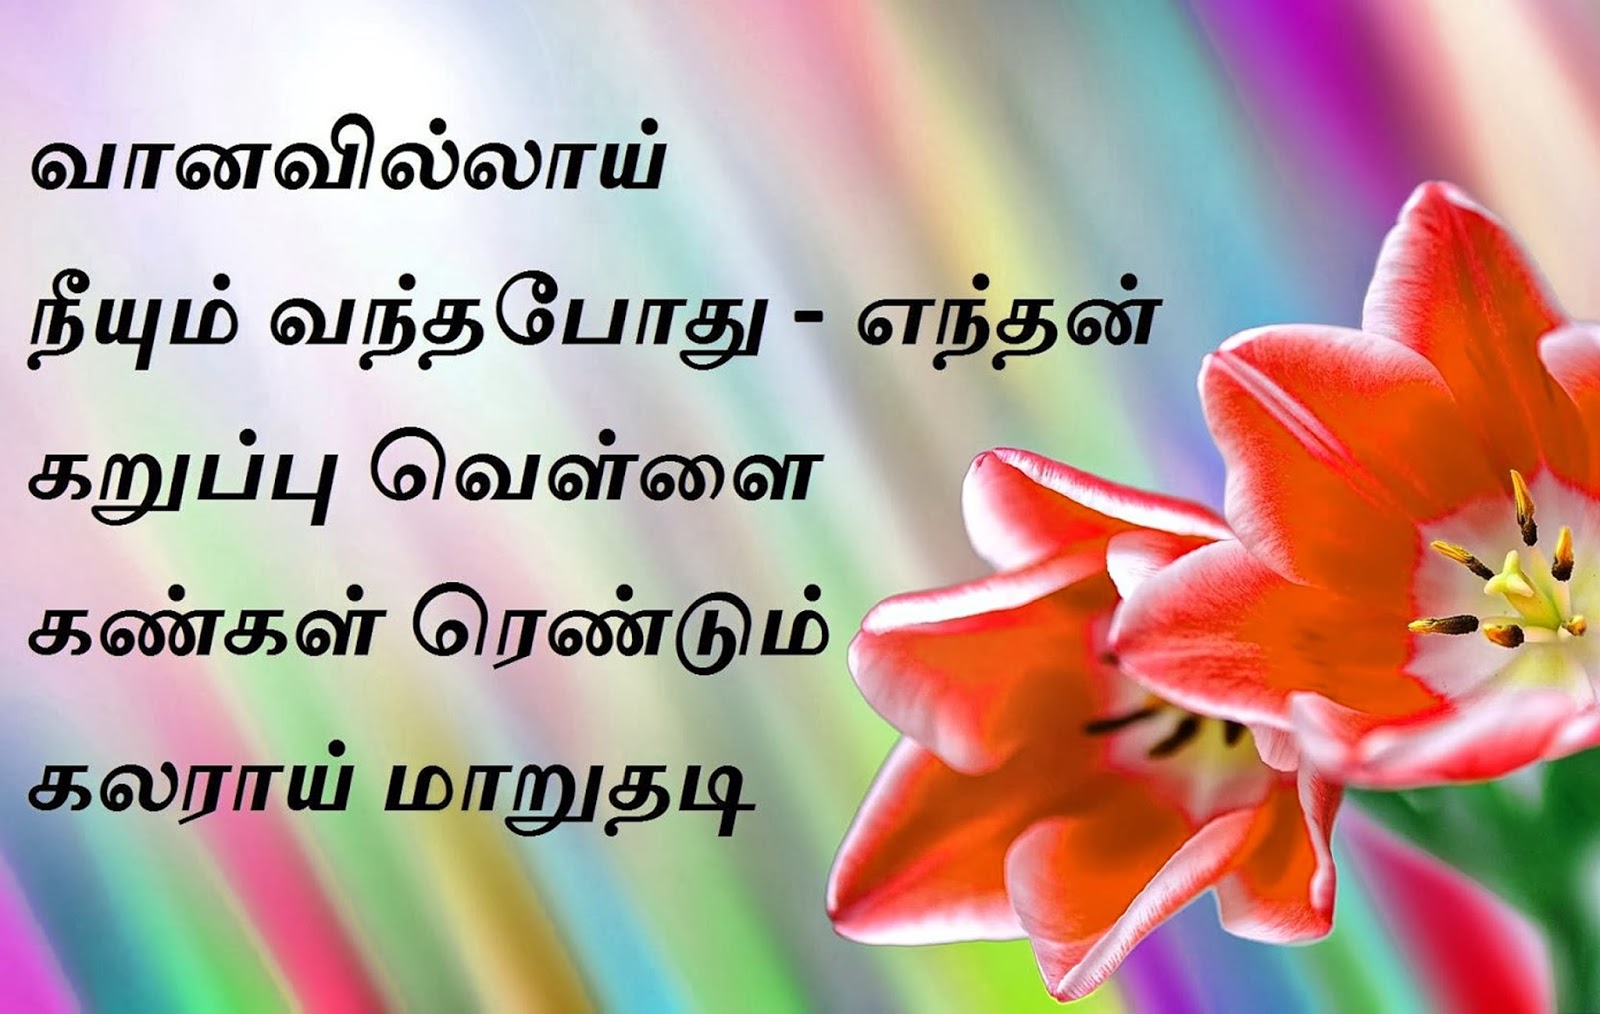 Tamil Text - HD Wallpaper 